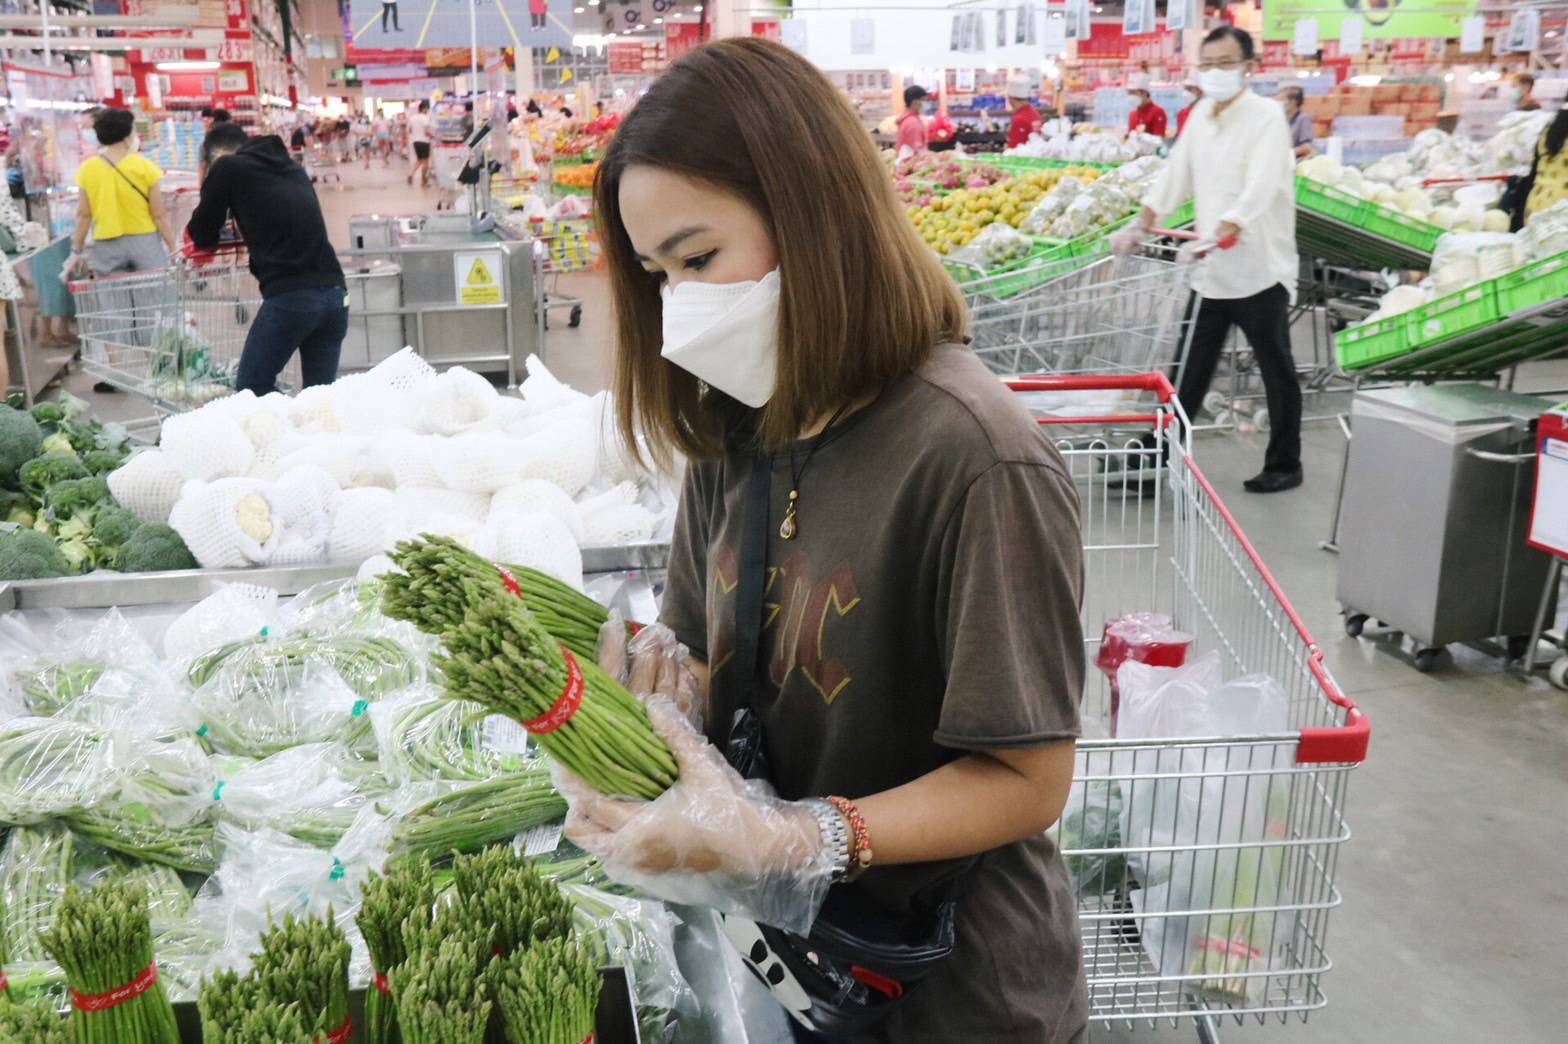 แม็คโคร เผย 10 อันดับผักขายดี ทุกเทศกาลกินเจ ย้ำเดินหน้าสนับสนุนเกษตรกรไทย สร้างรายได้มั่นคง ทุกสถานการณ์วิกฤต